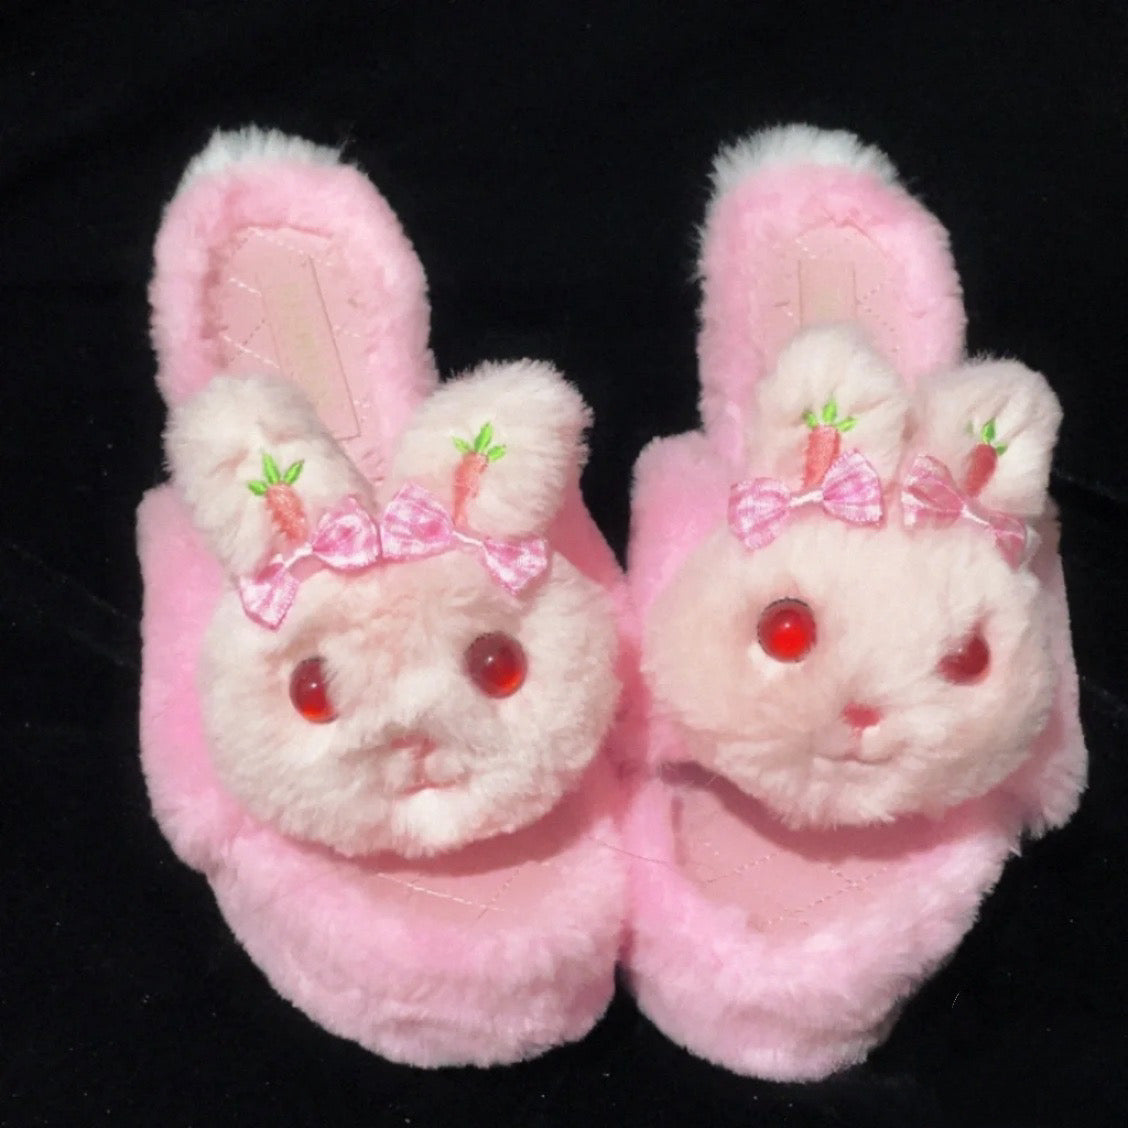 ♡ Розовый кролик ♡ - Туфли на платформе ручной работы